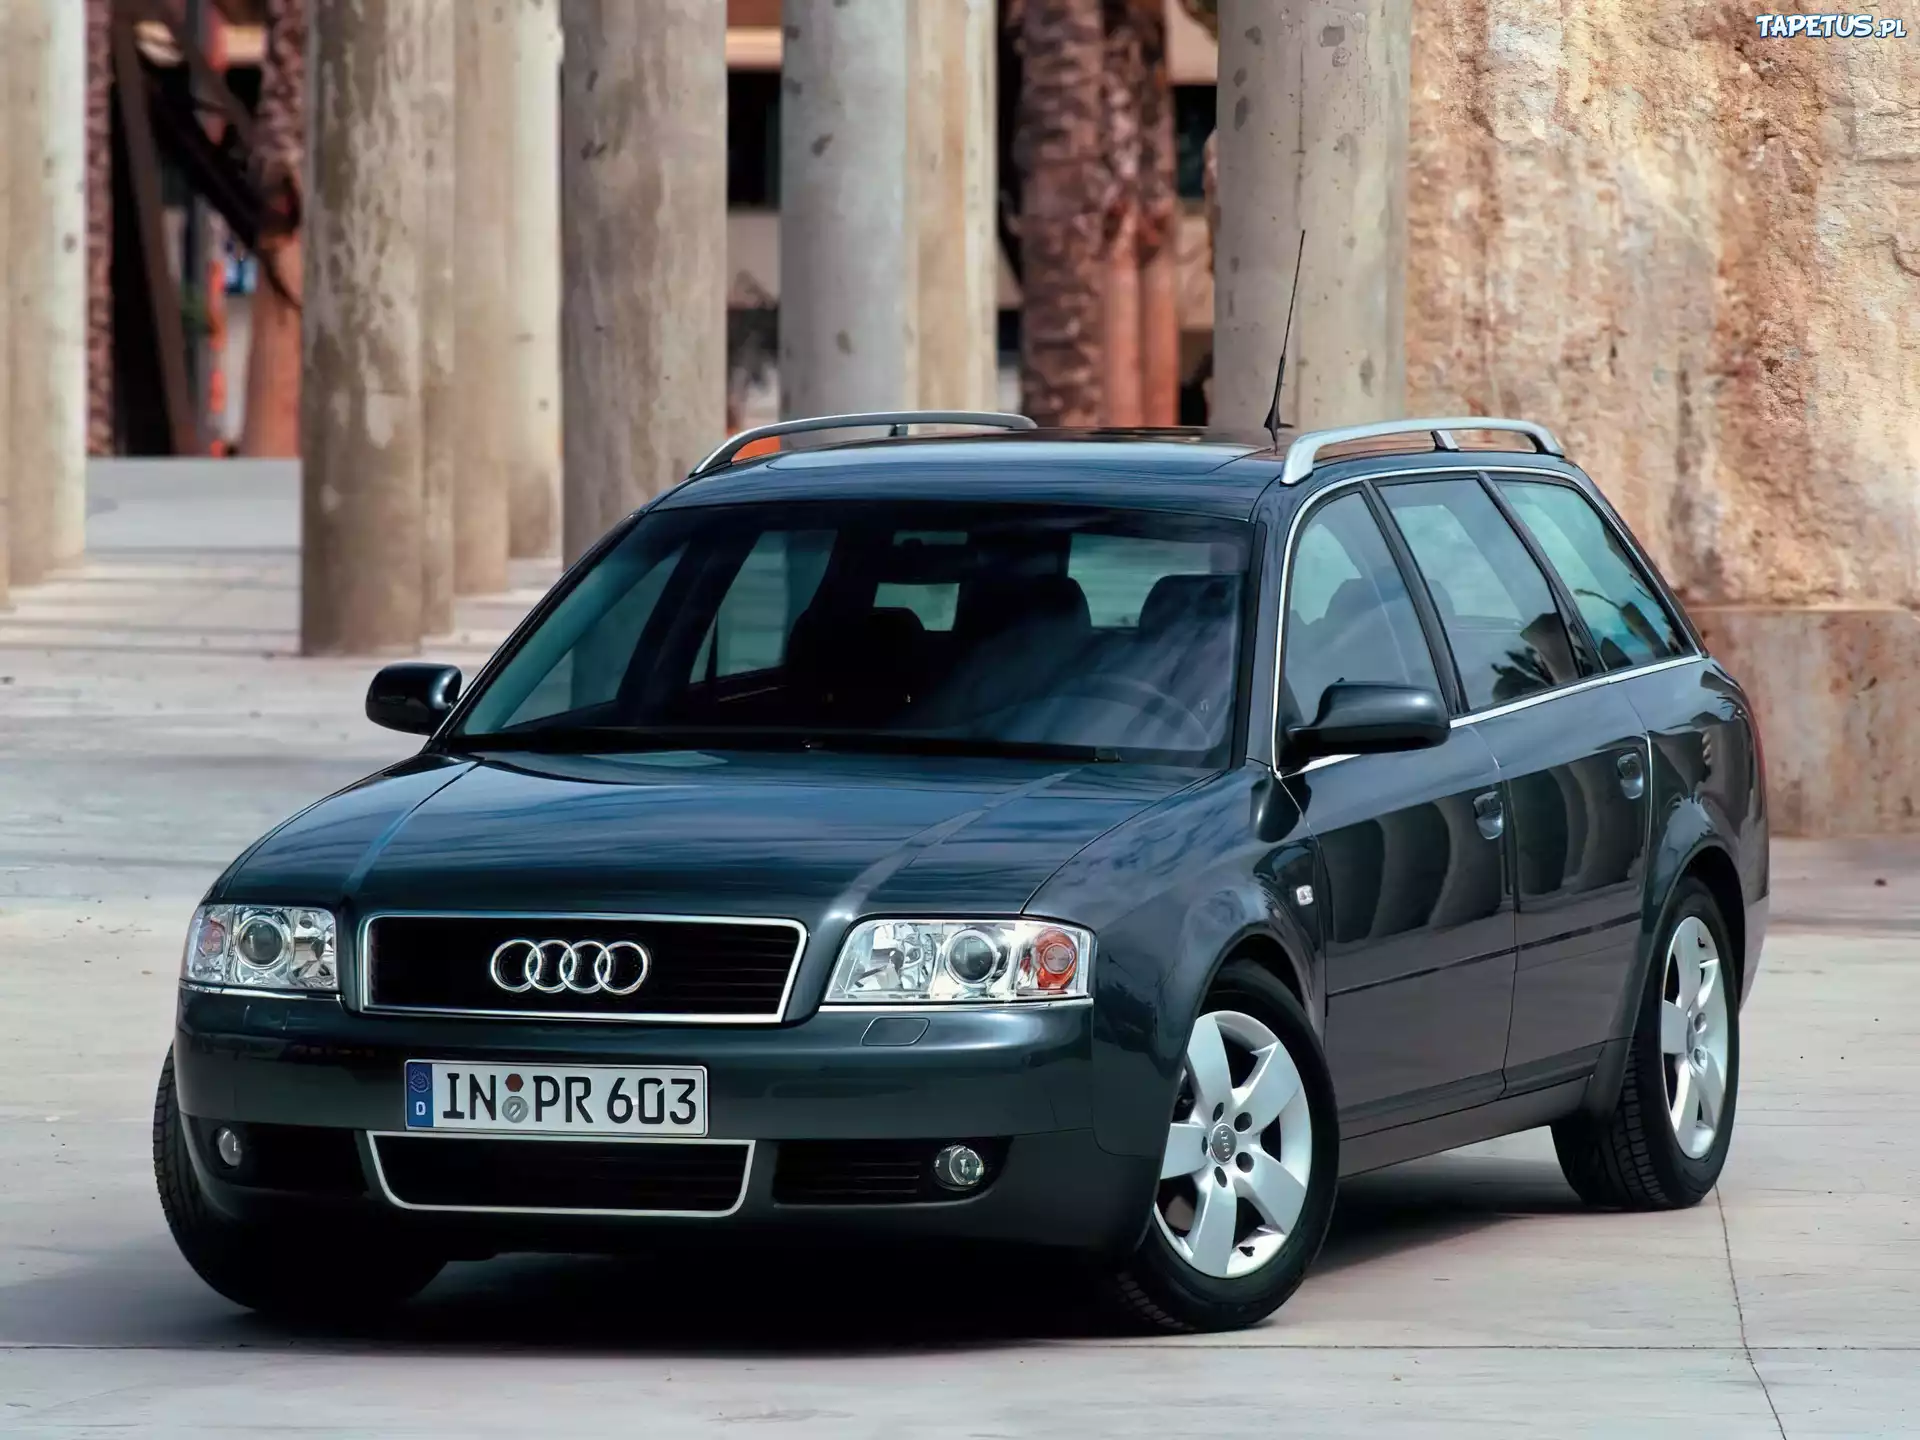 Ауди б5 универсал купить. Audi a6 c5 универсал. Ауди а6 Авант 2001. Ауди а6 Авант 2001 универсал. Audi a6 2001.